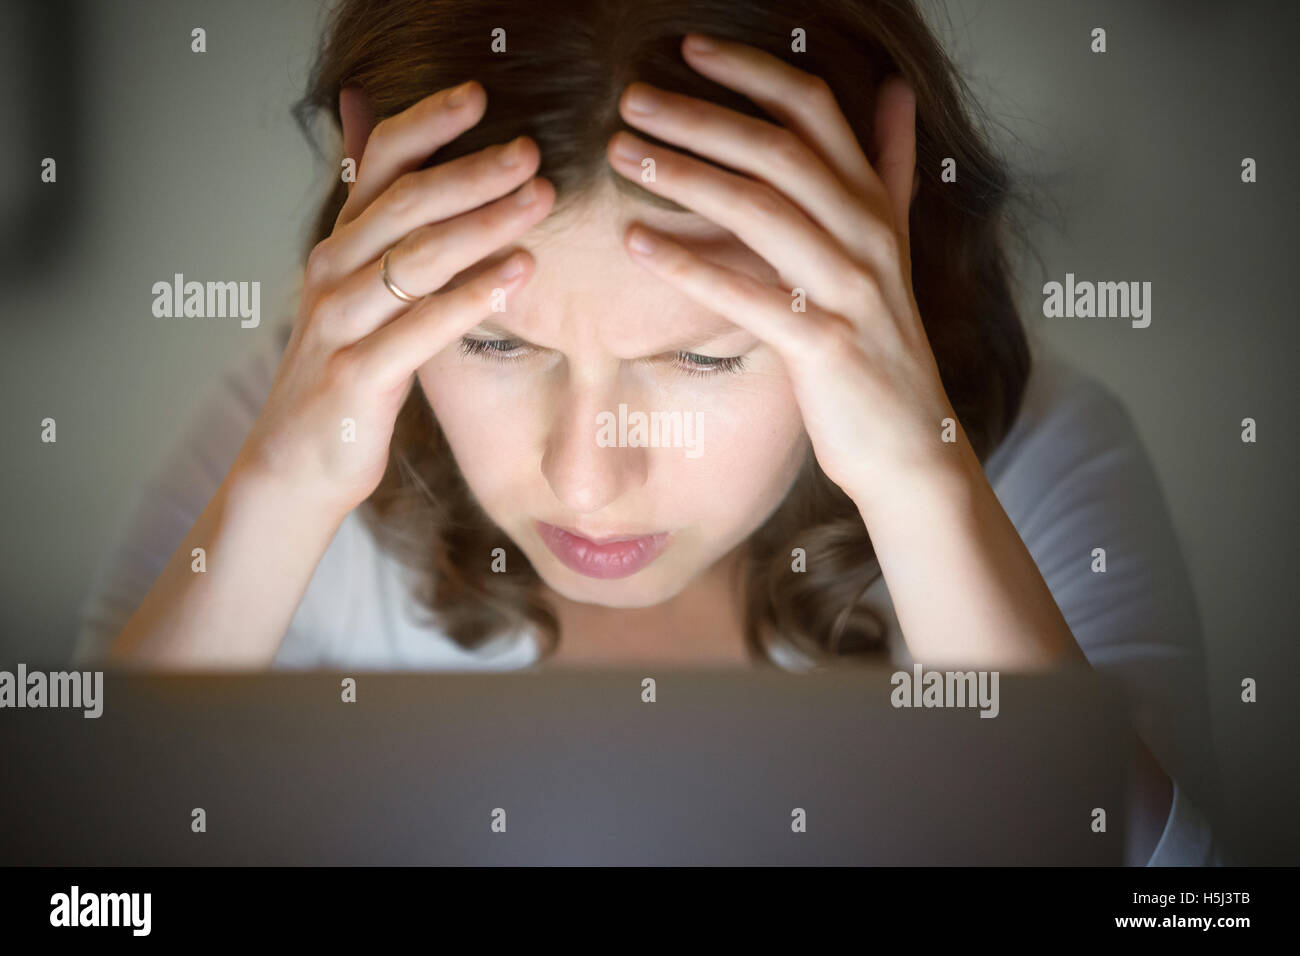 Ritratto di una donna afferrando la testa vicino al computer portatile, a tarda notte Foto Stock